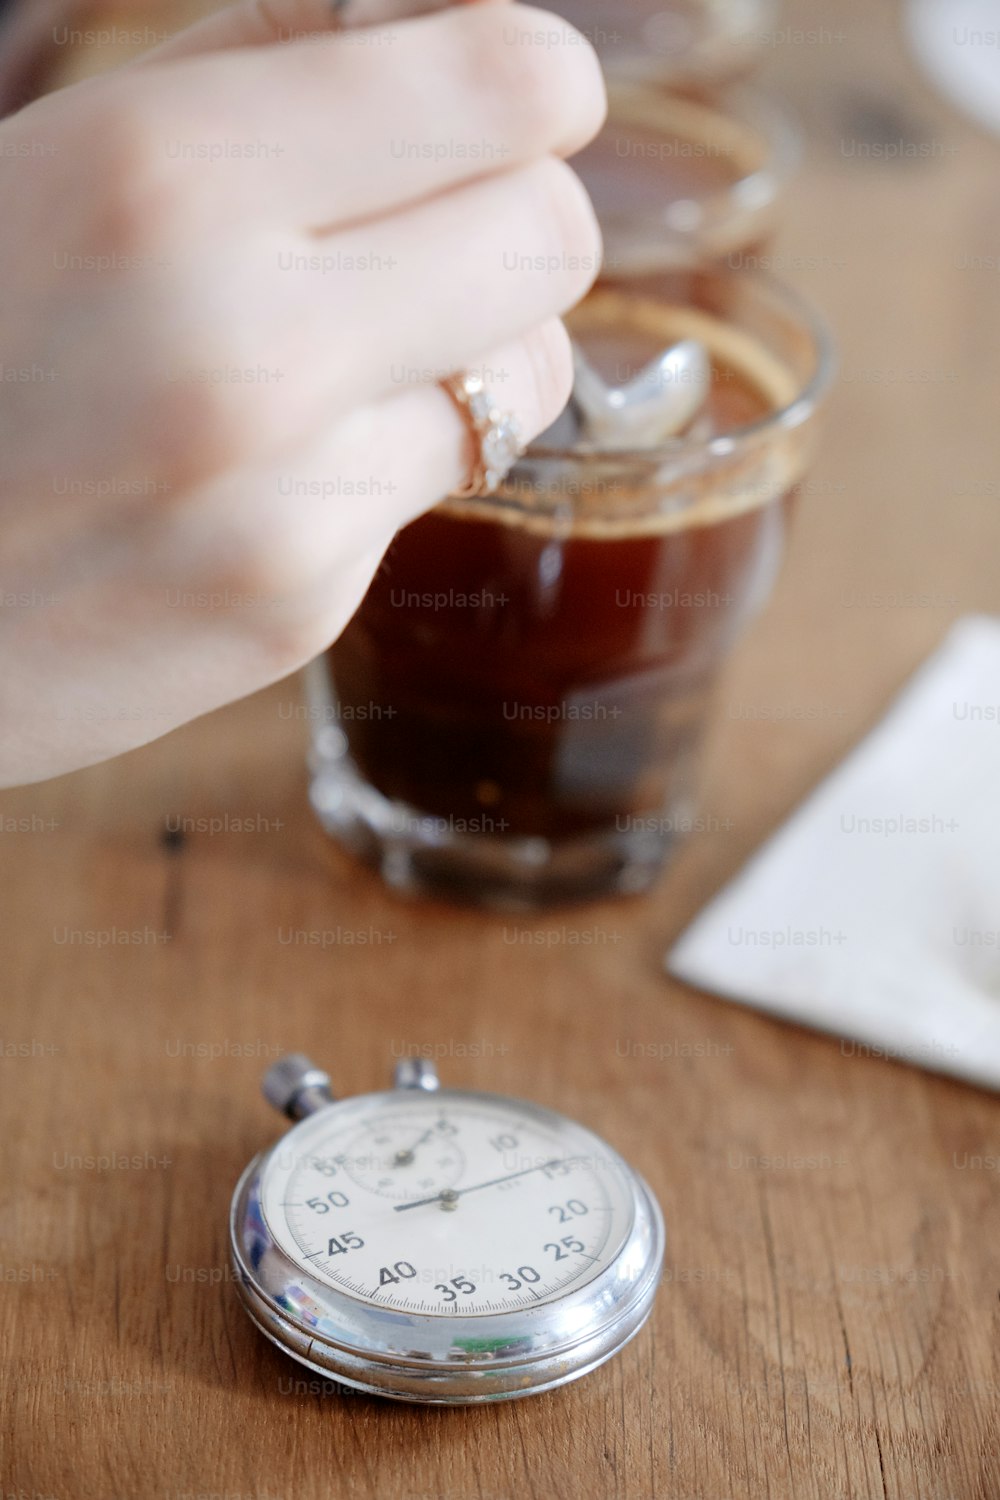 Gros plan des mains d’un homme dégustant du café fraîchement moulu dans une tasse en verre, à l’aide d’une cuillère, examinant le goût et la saveur du café lors d’un test de dégustation de café pour le barosta